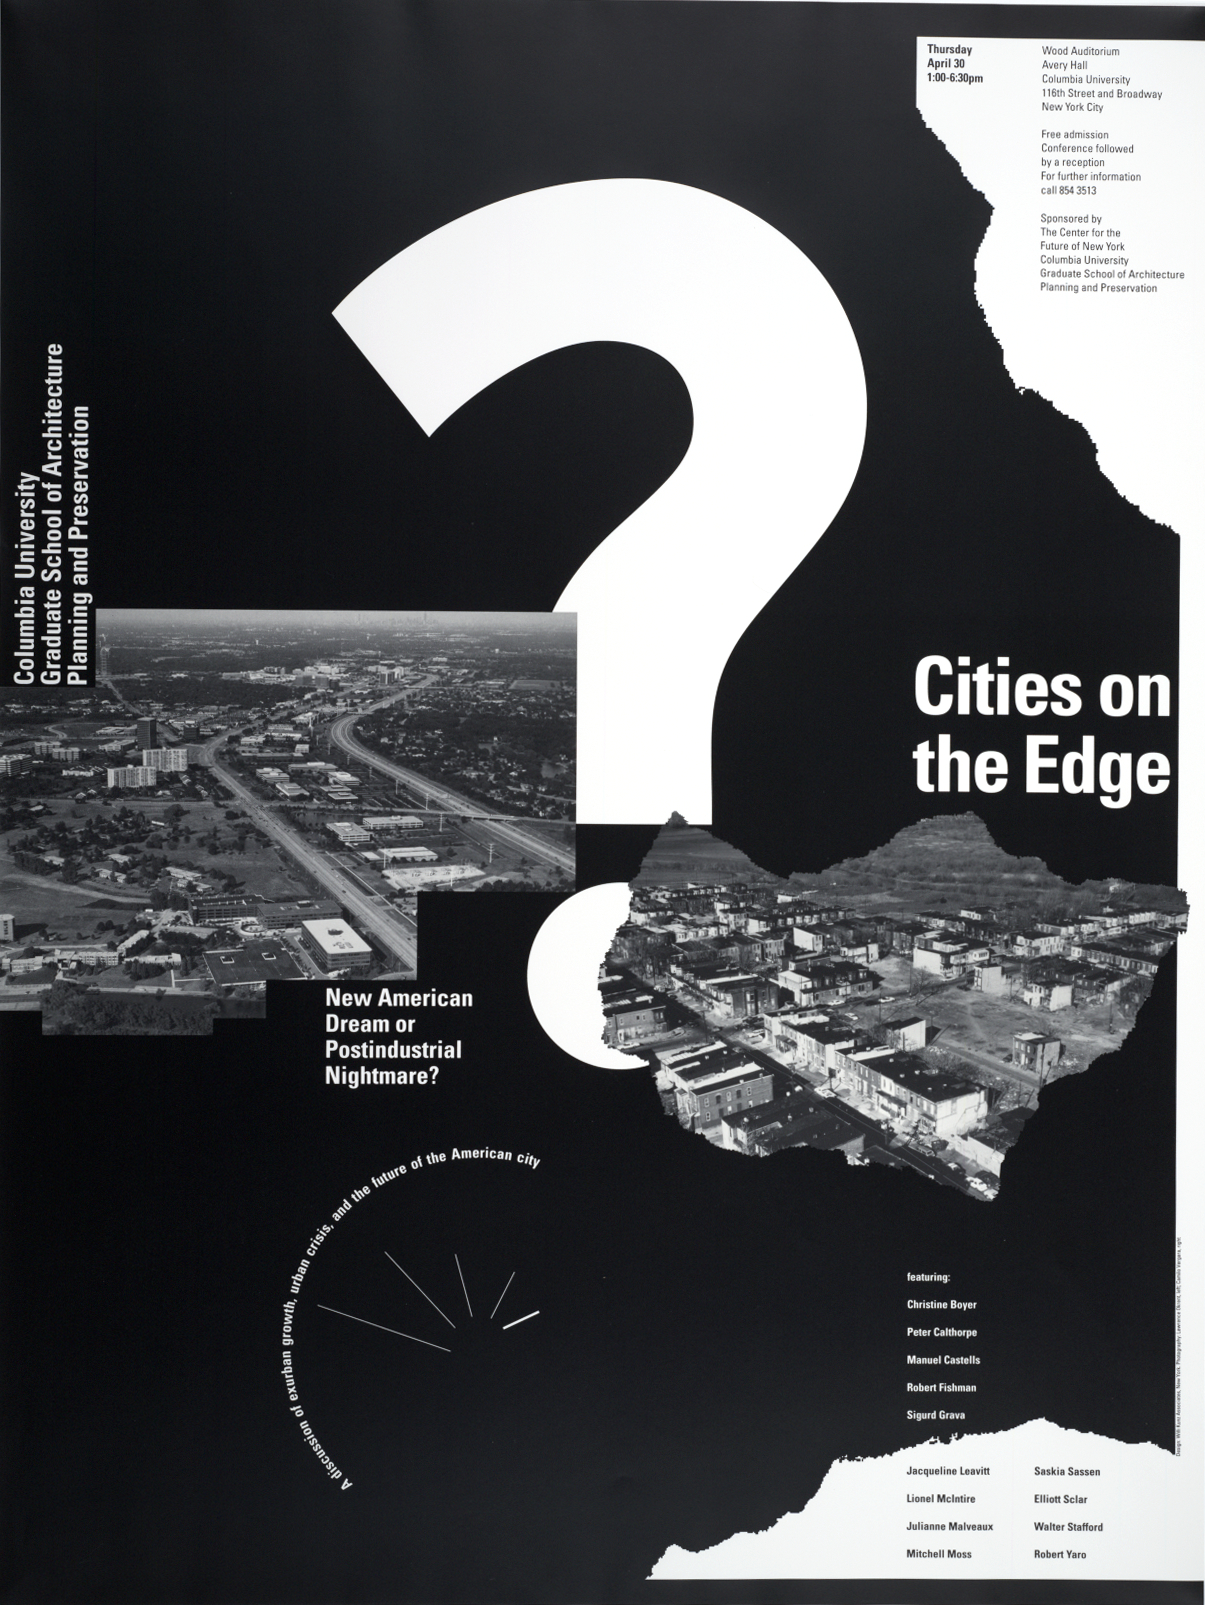 Willi Kunz, Columbia University, Cities on the Edge Symposium